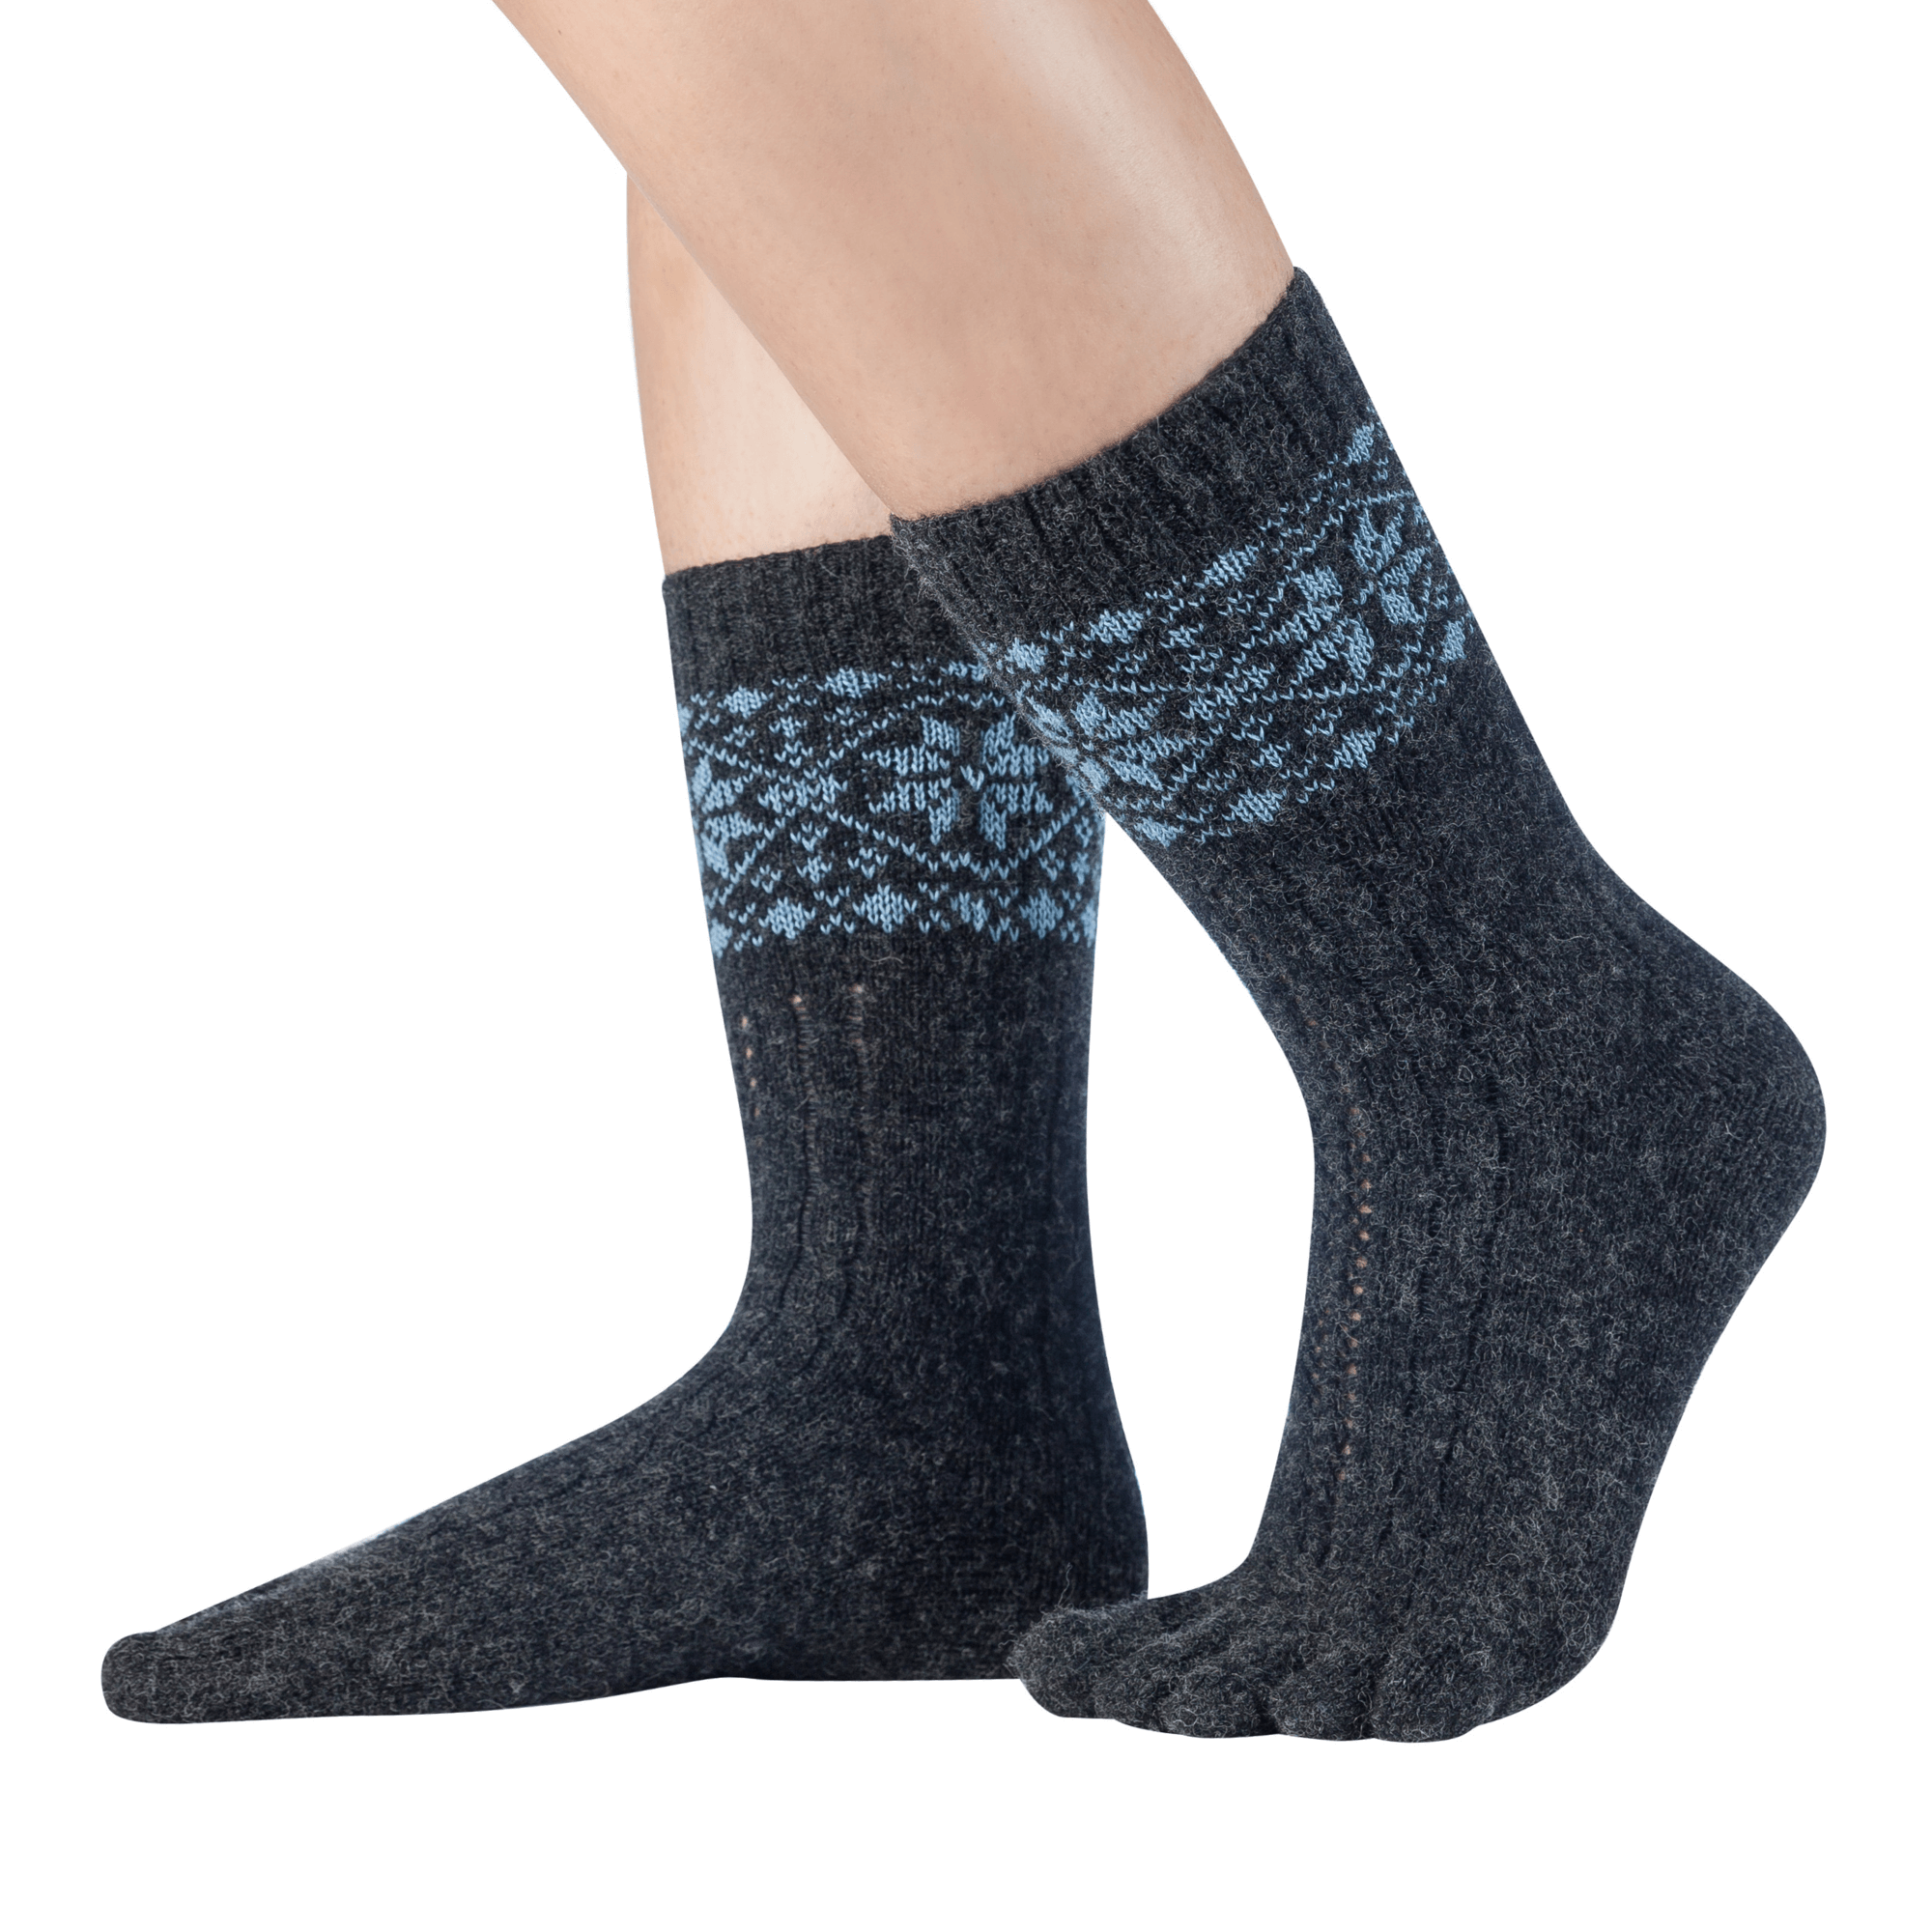  Knitido  chaussettes à orteils chaud en mérinos & cachemire avec motif de taches de neige en anthracite/bleu